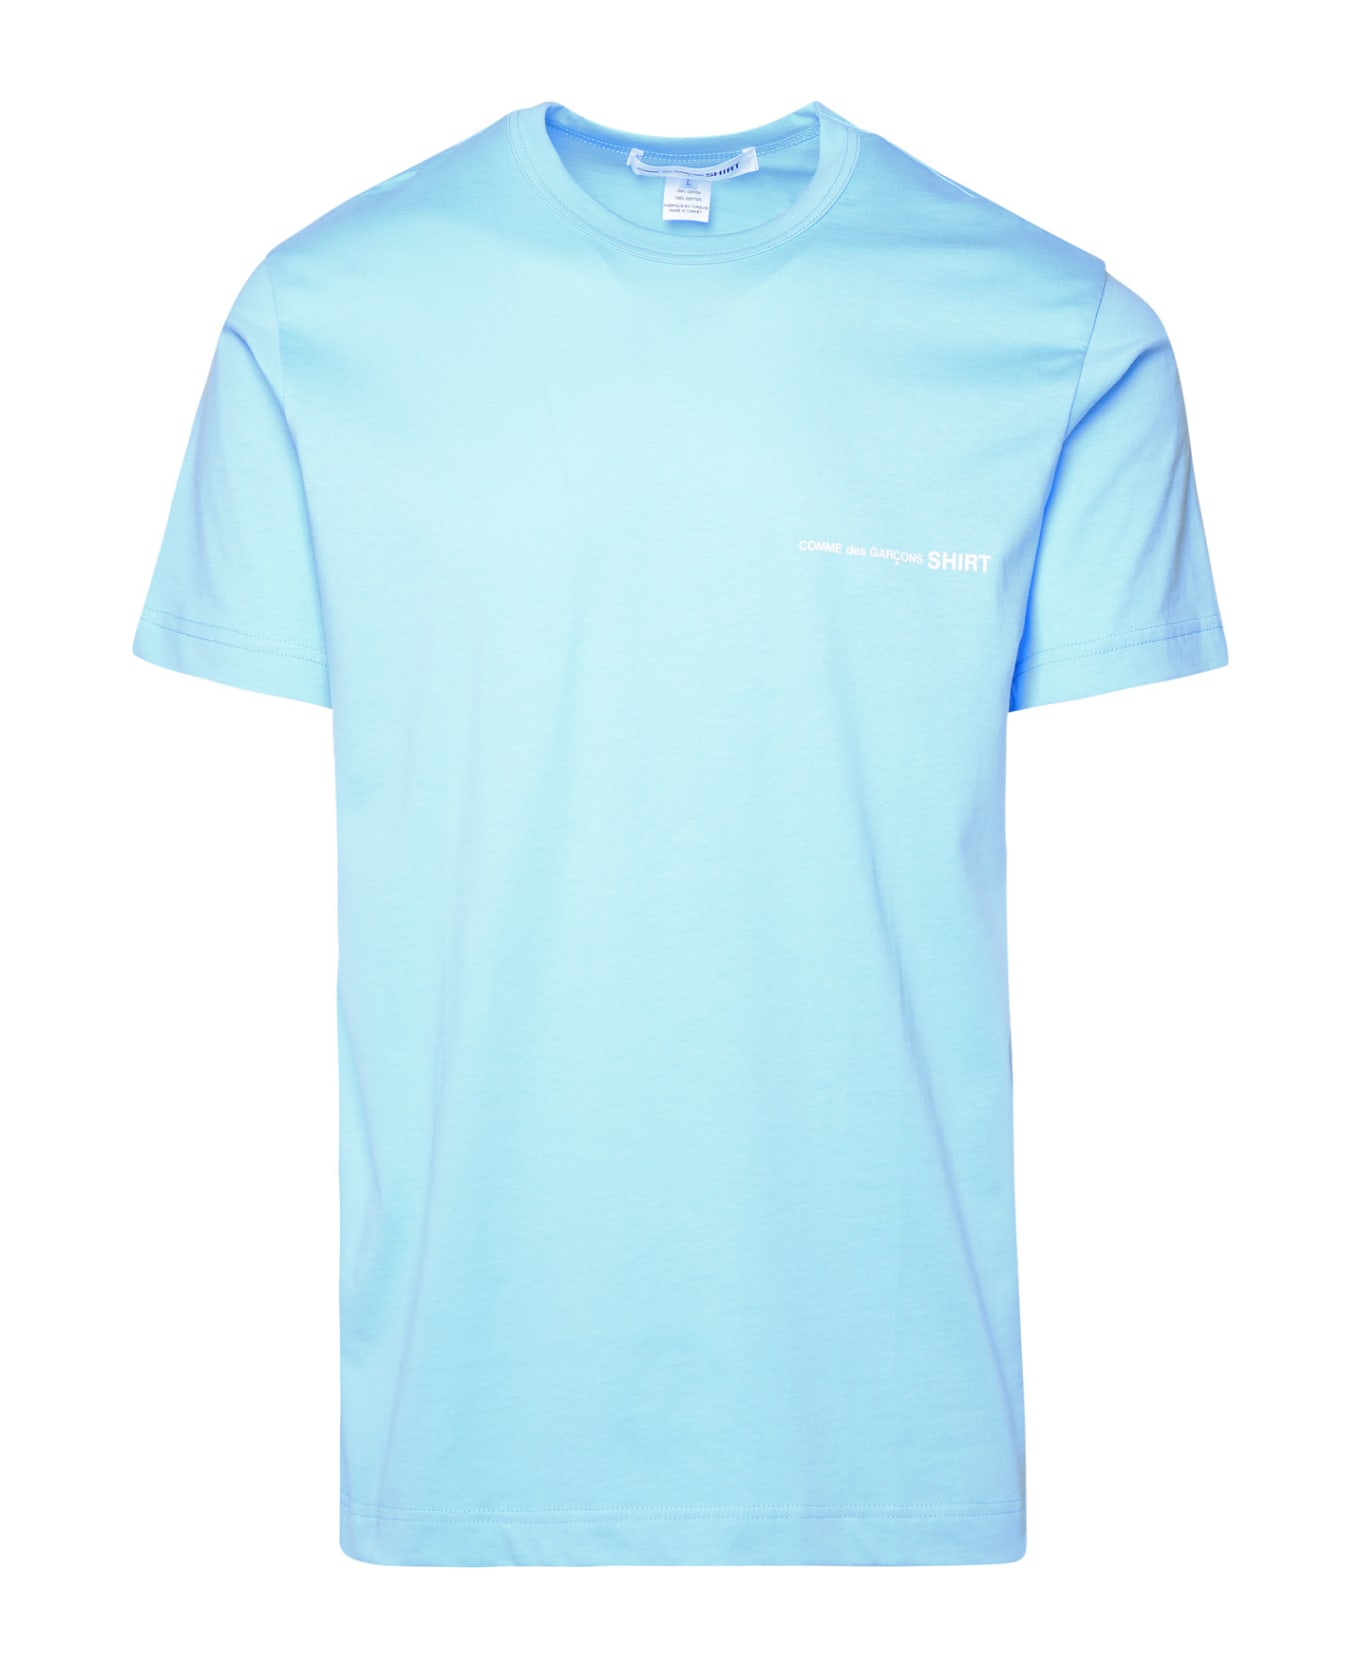 Comme des Garçons Shirt Light Blue Cotton T-shirt - Light Blue